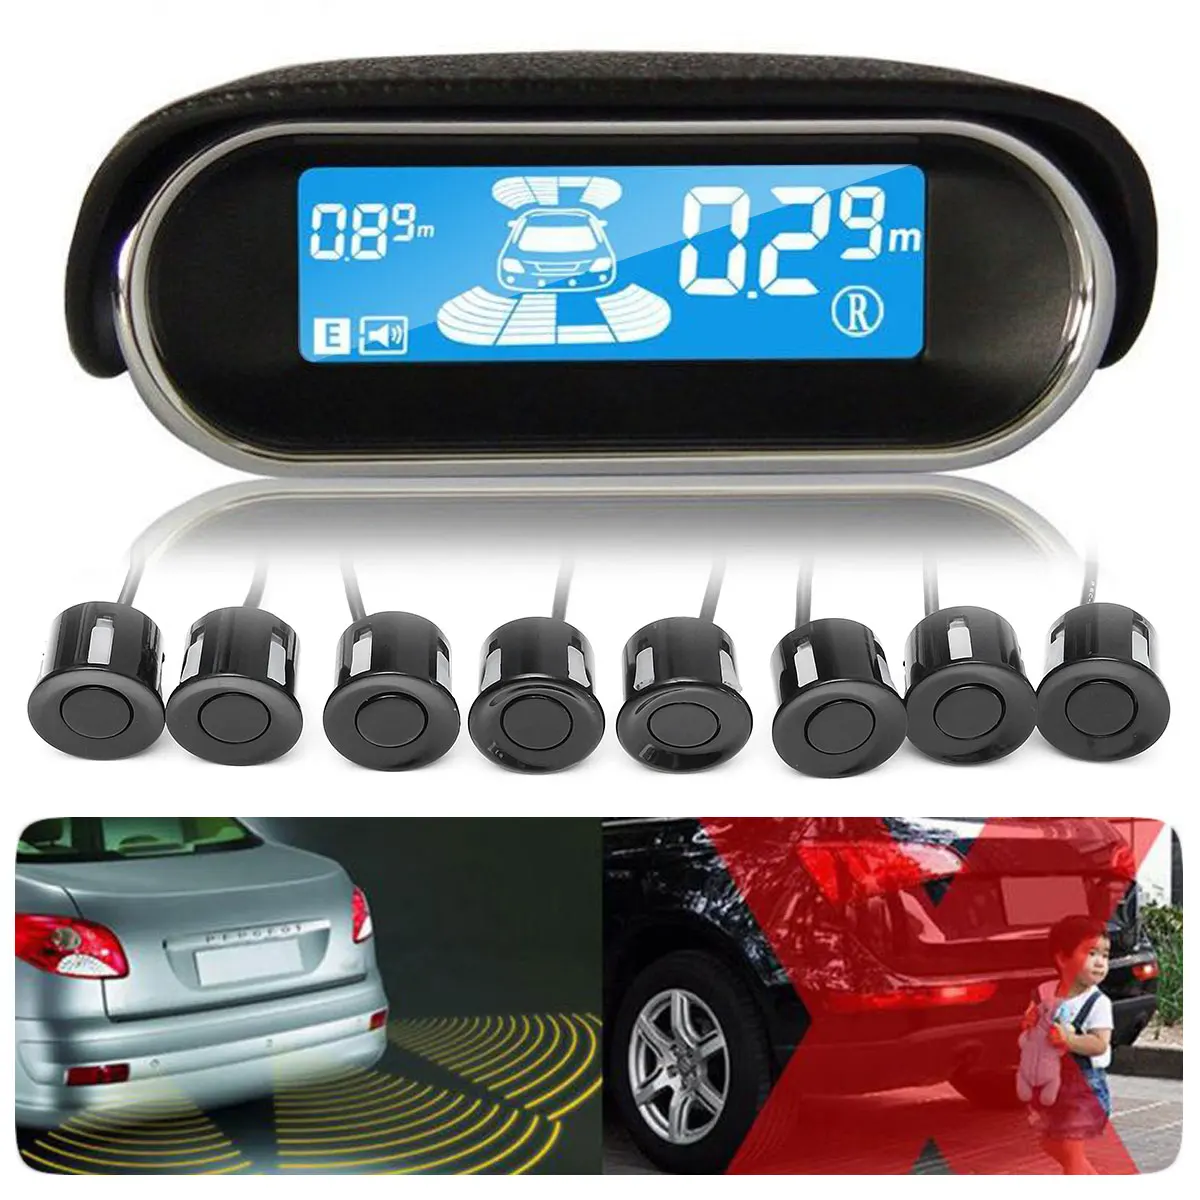 ЖК-дисплей, Автомобильный датчик парковки, 8 радаров заднего вида, система заднего вида, комплект, автомобильный детектор, Реверсивные датчики, автомобильные аксессуары